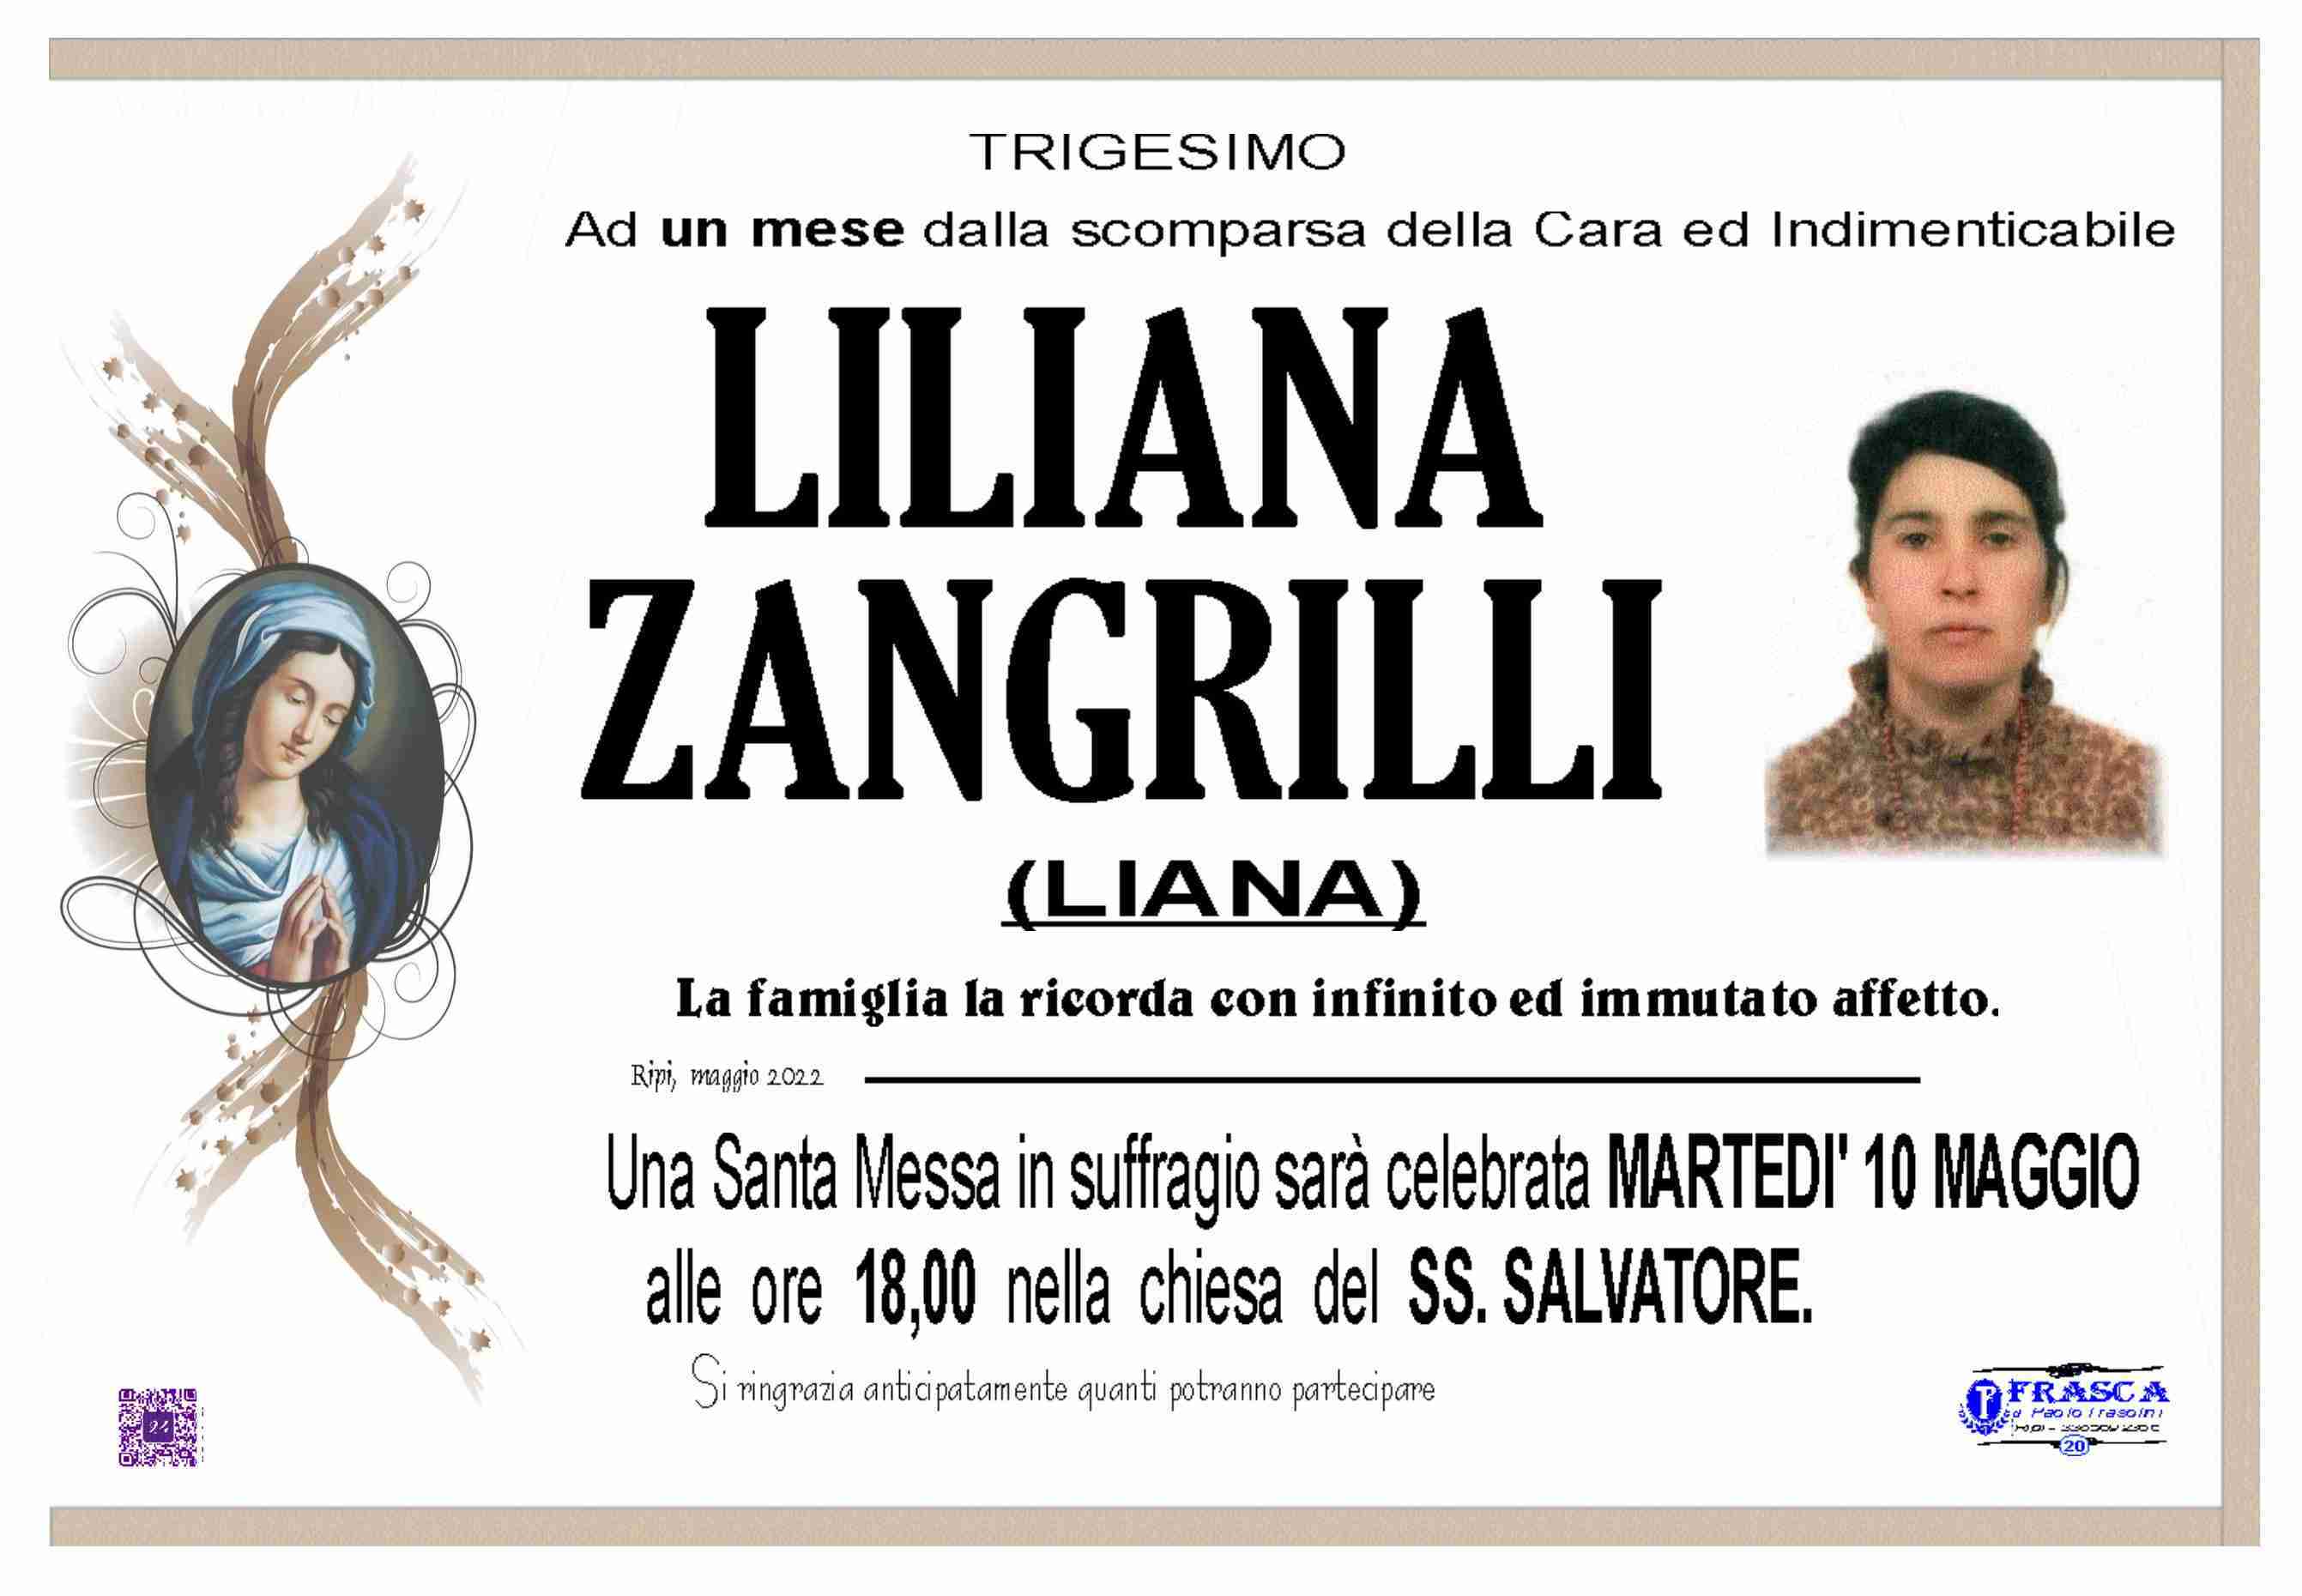 Liliana Zangrilli